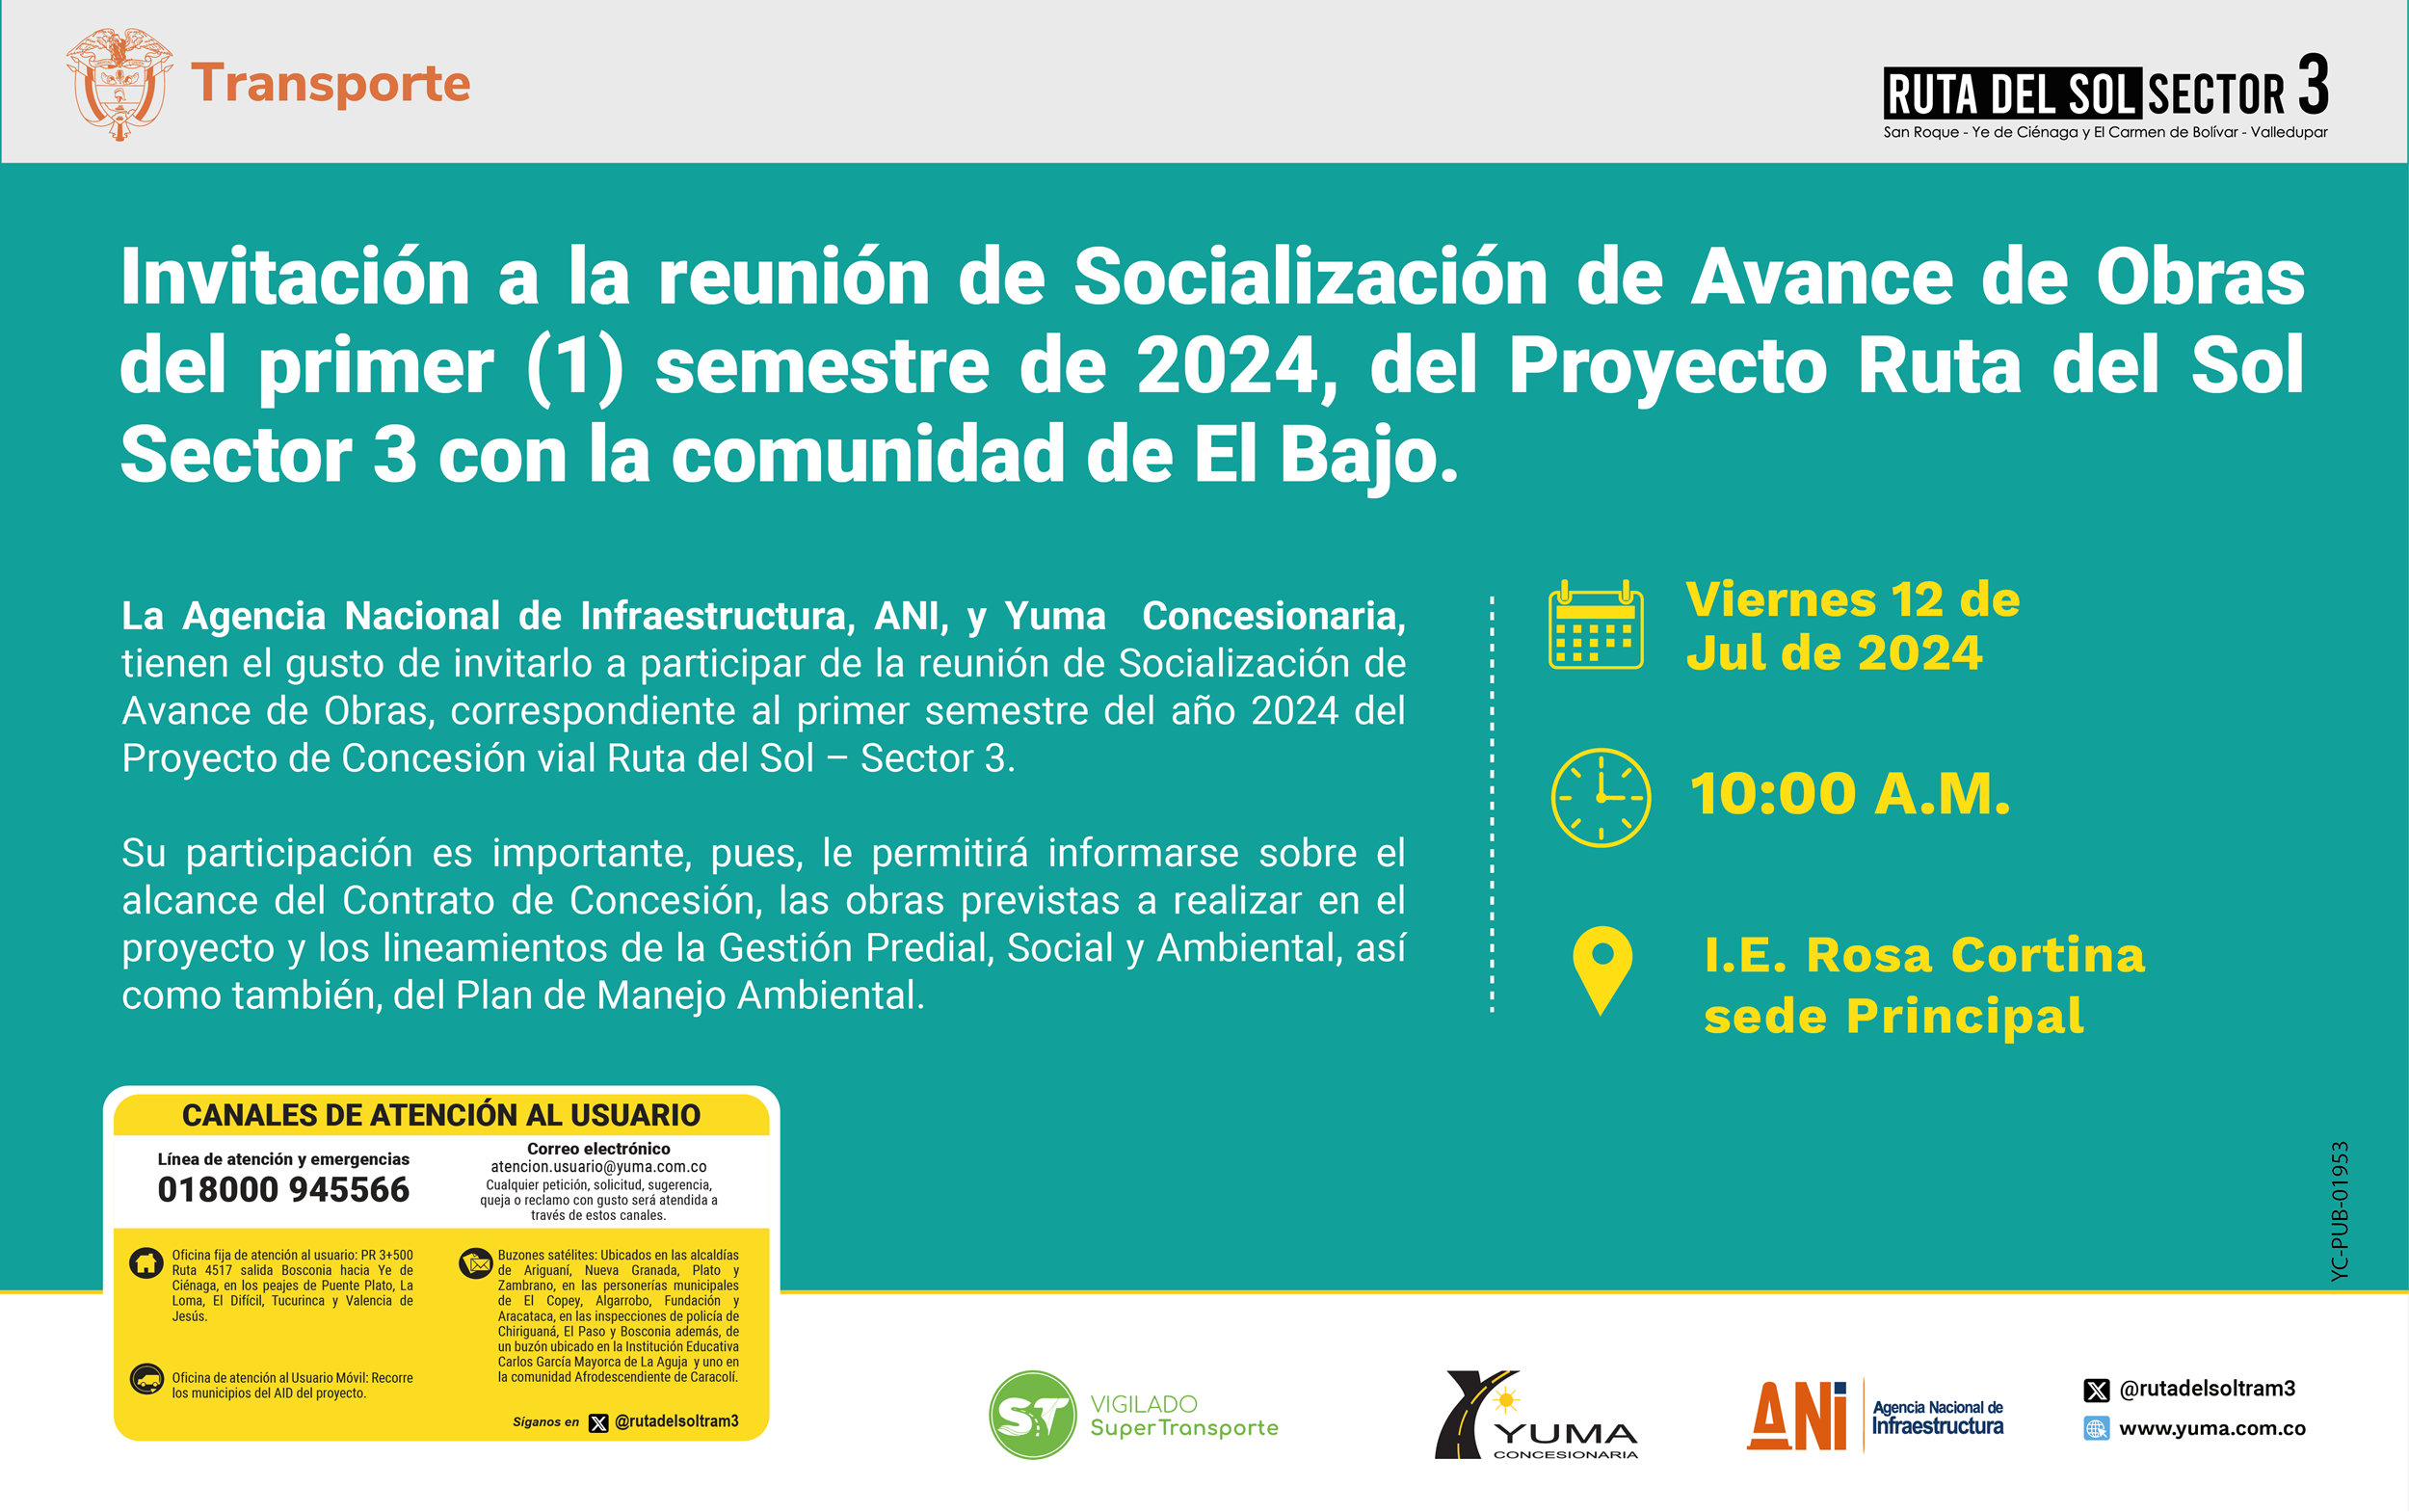 En este momento estás viendo Invitación a la reunión de Socialización de Avance de Obras del primer semestre de 2024 con la comunidad de El Bajo